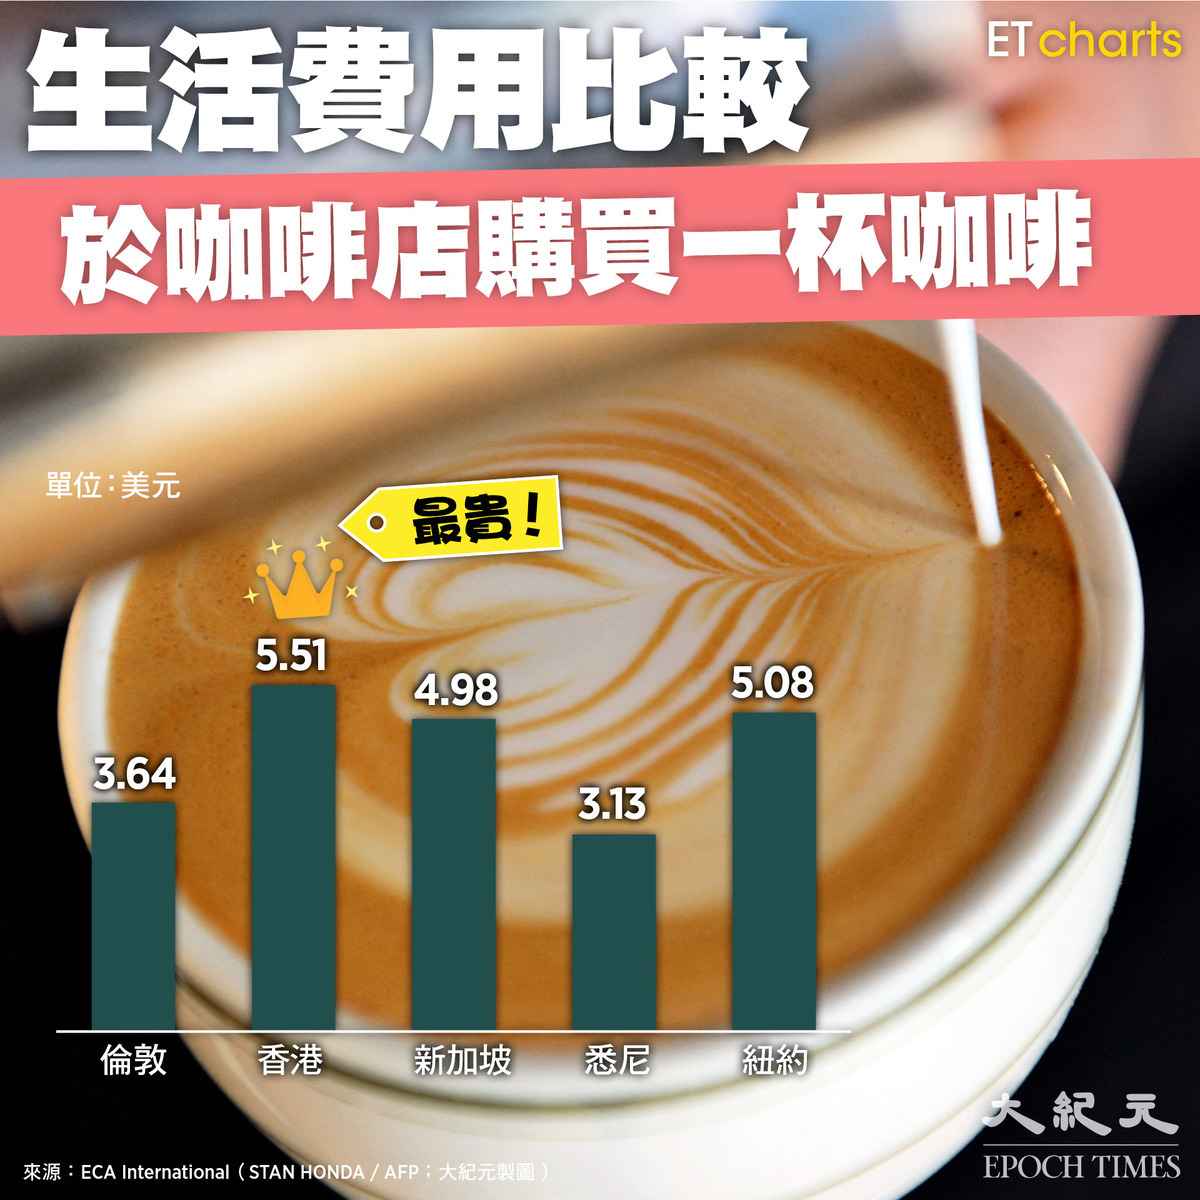 各地生活費用：於咖啡店購買一杯咖啡的比較（ET Charts、大紀元製圖）